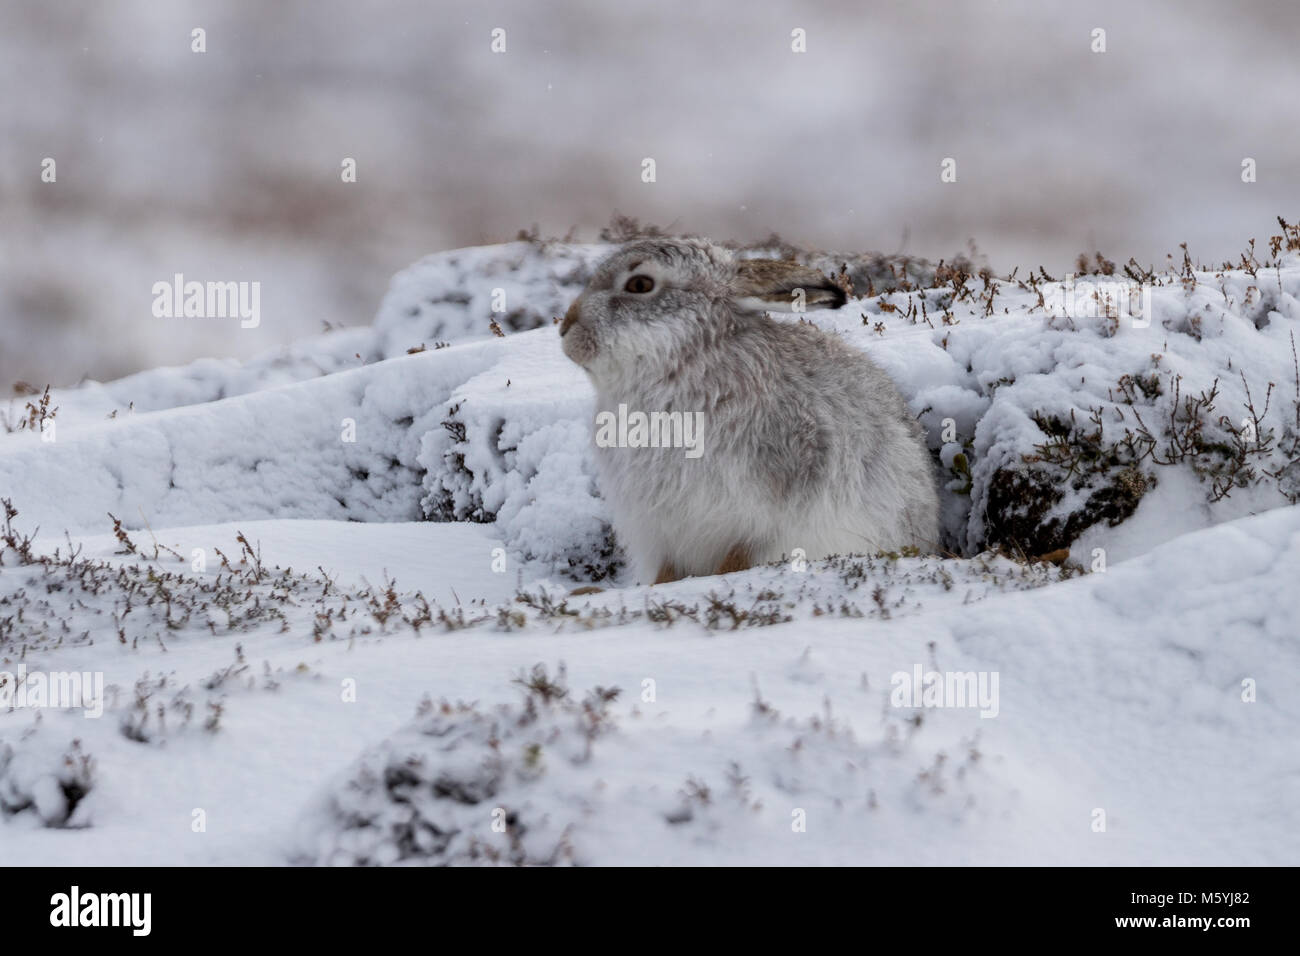 Mountain lepre (Lepus timidus) seduta al riparo sotto la neve. Foto Stock